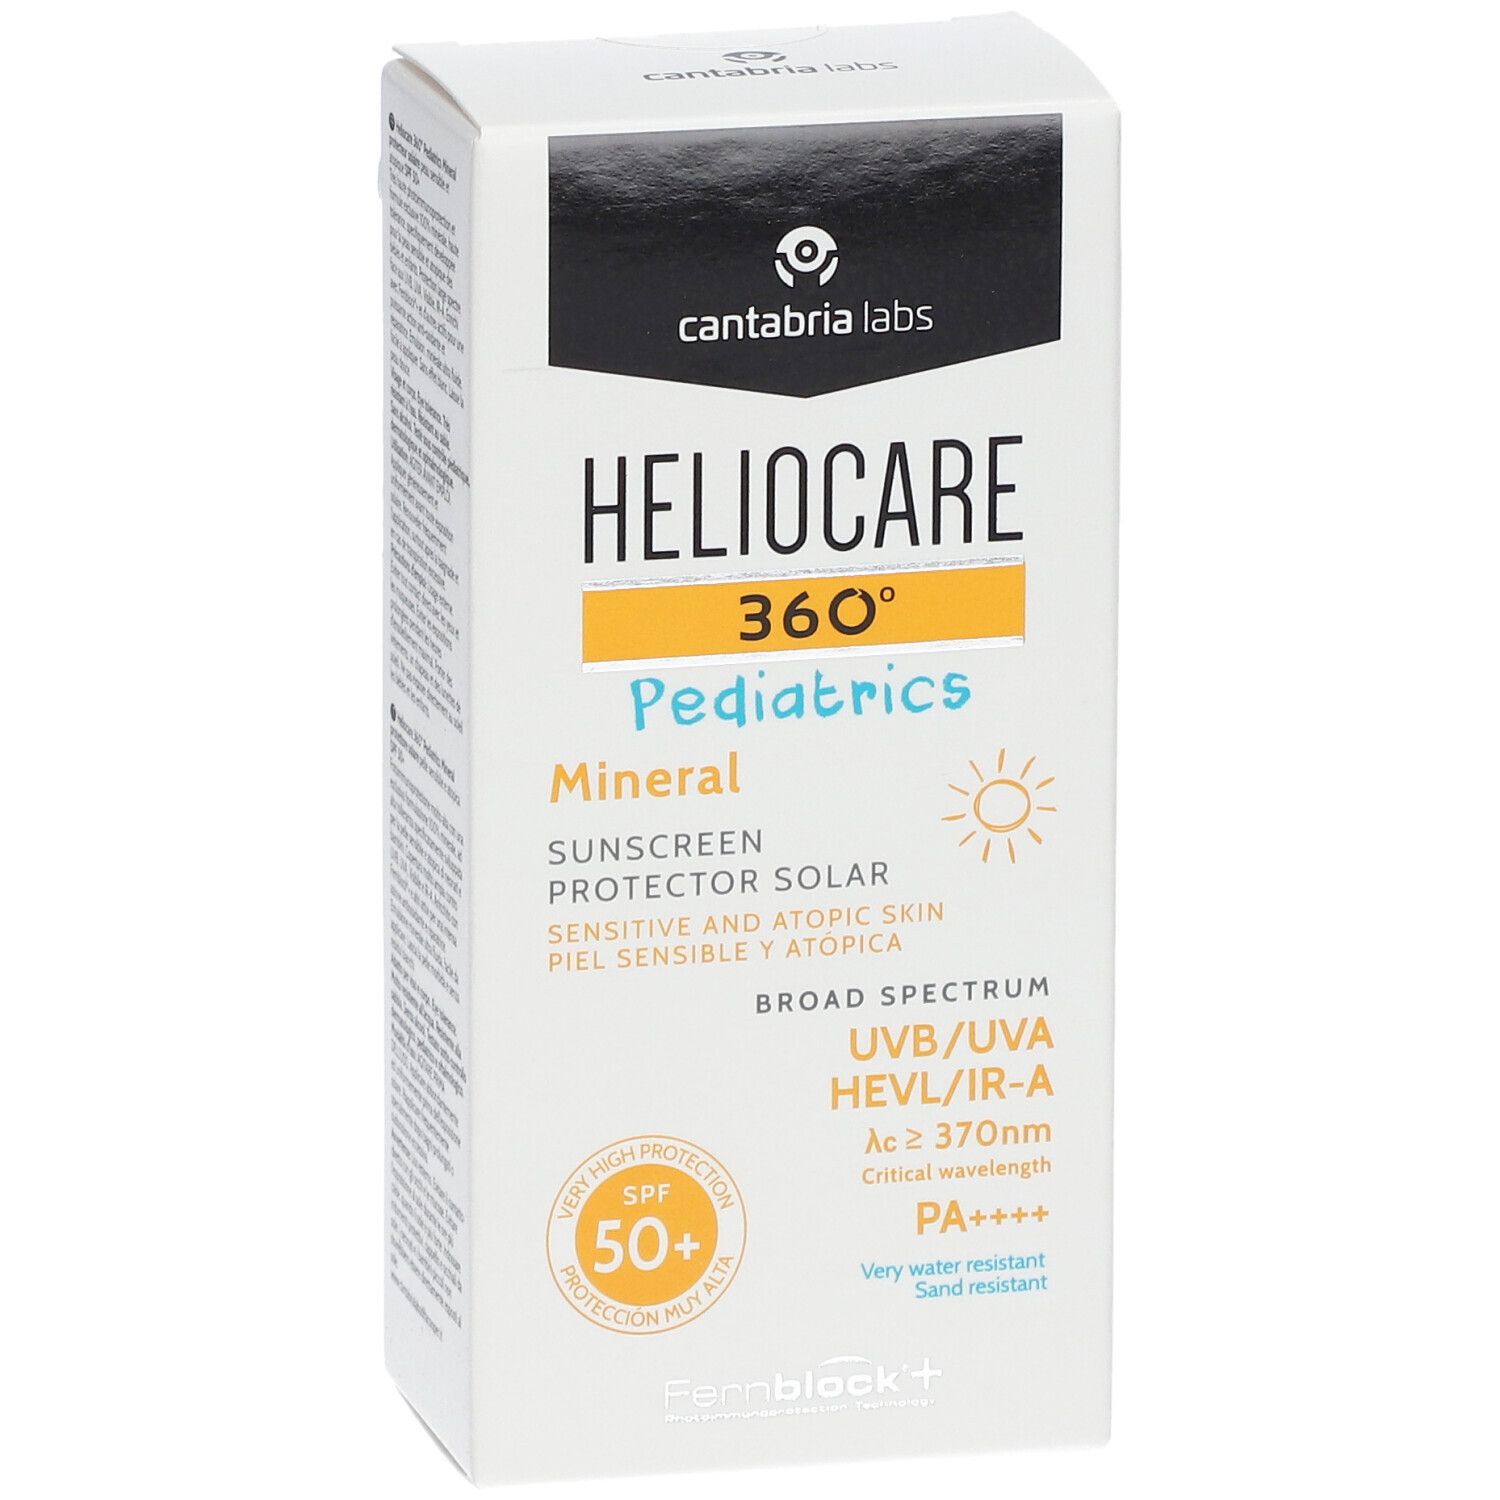 HELIOCARE® 360° Pediatrics Mineral LSF 50+